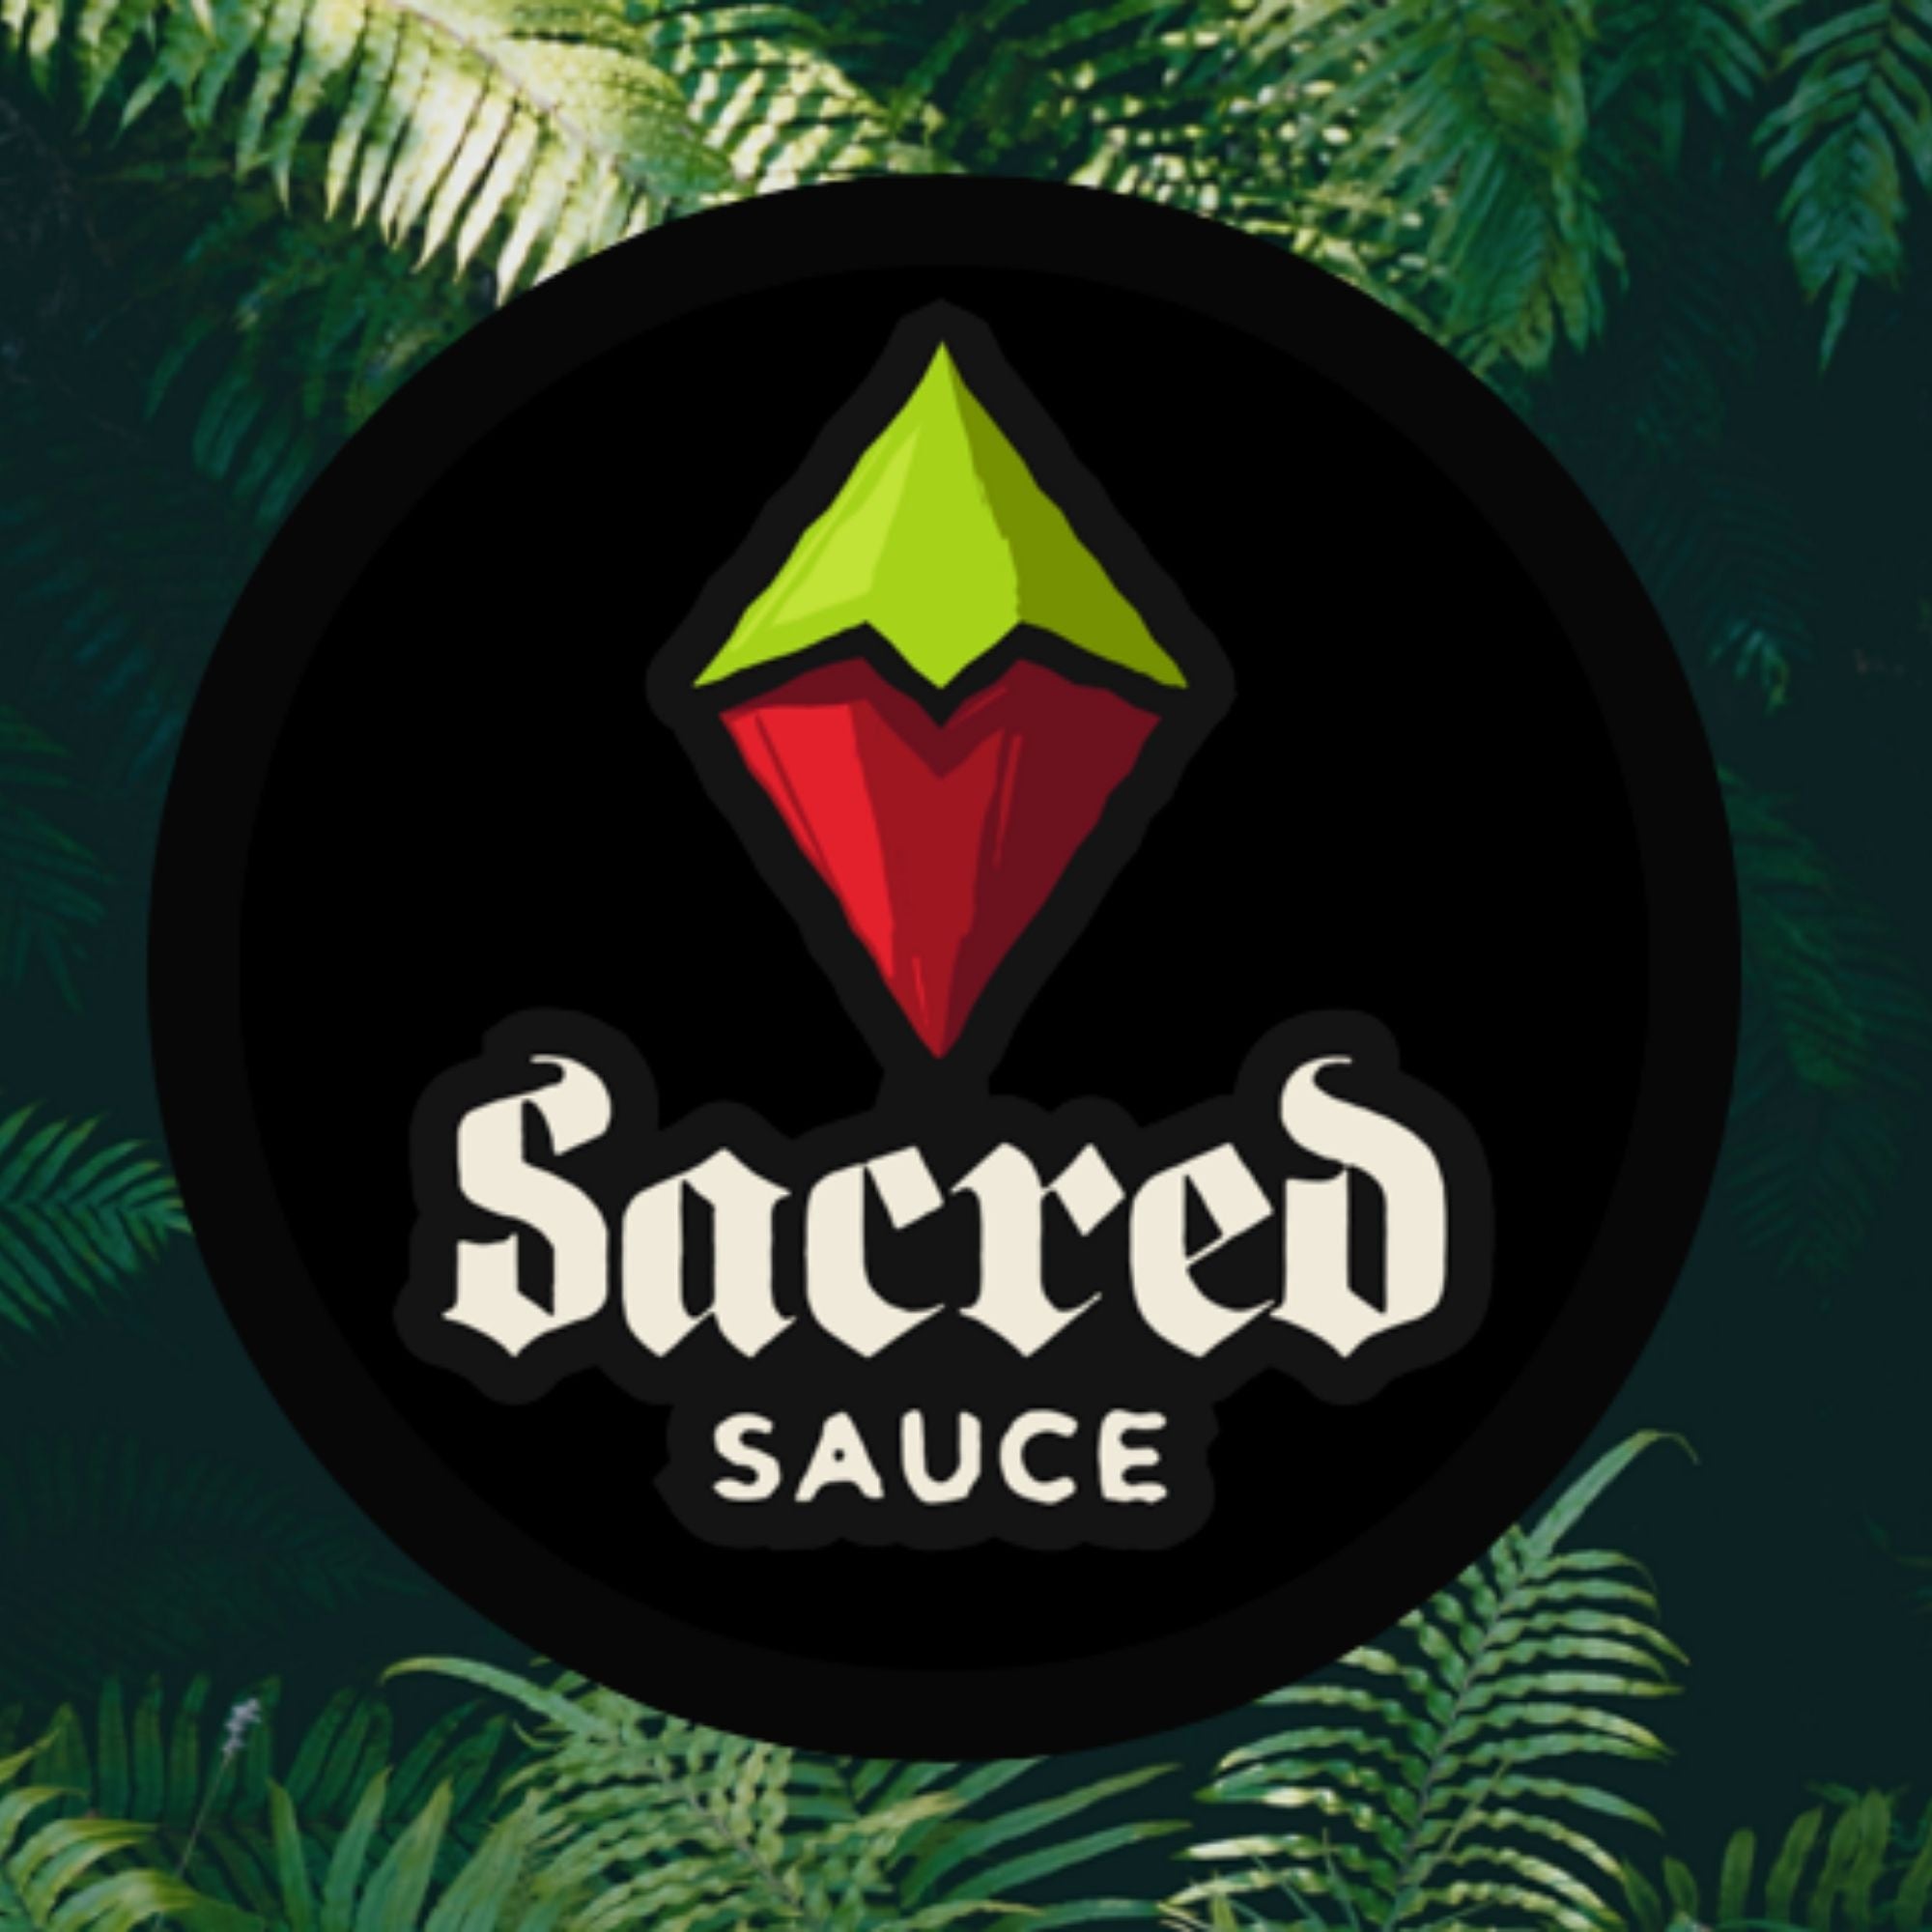 sacred sauce story